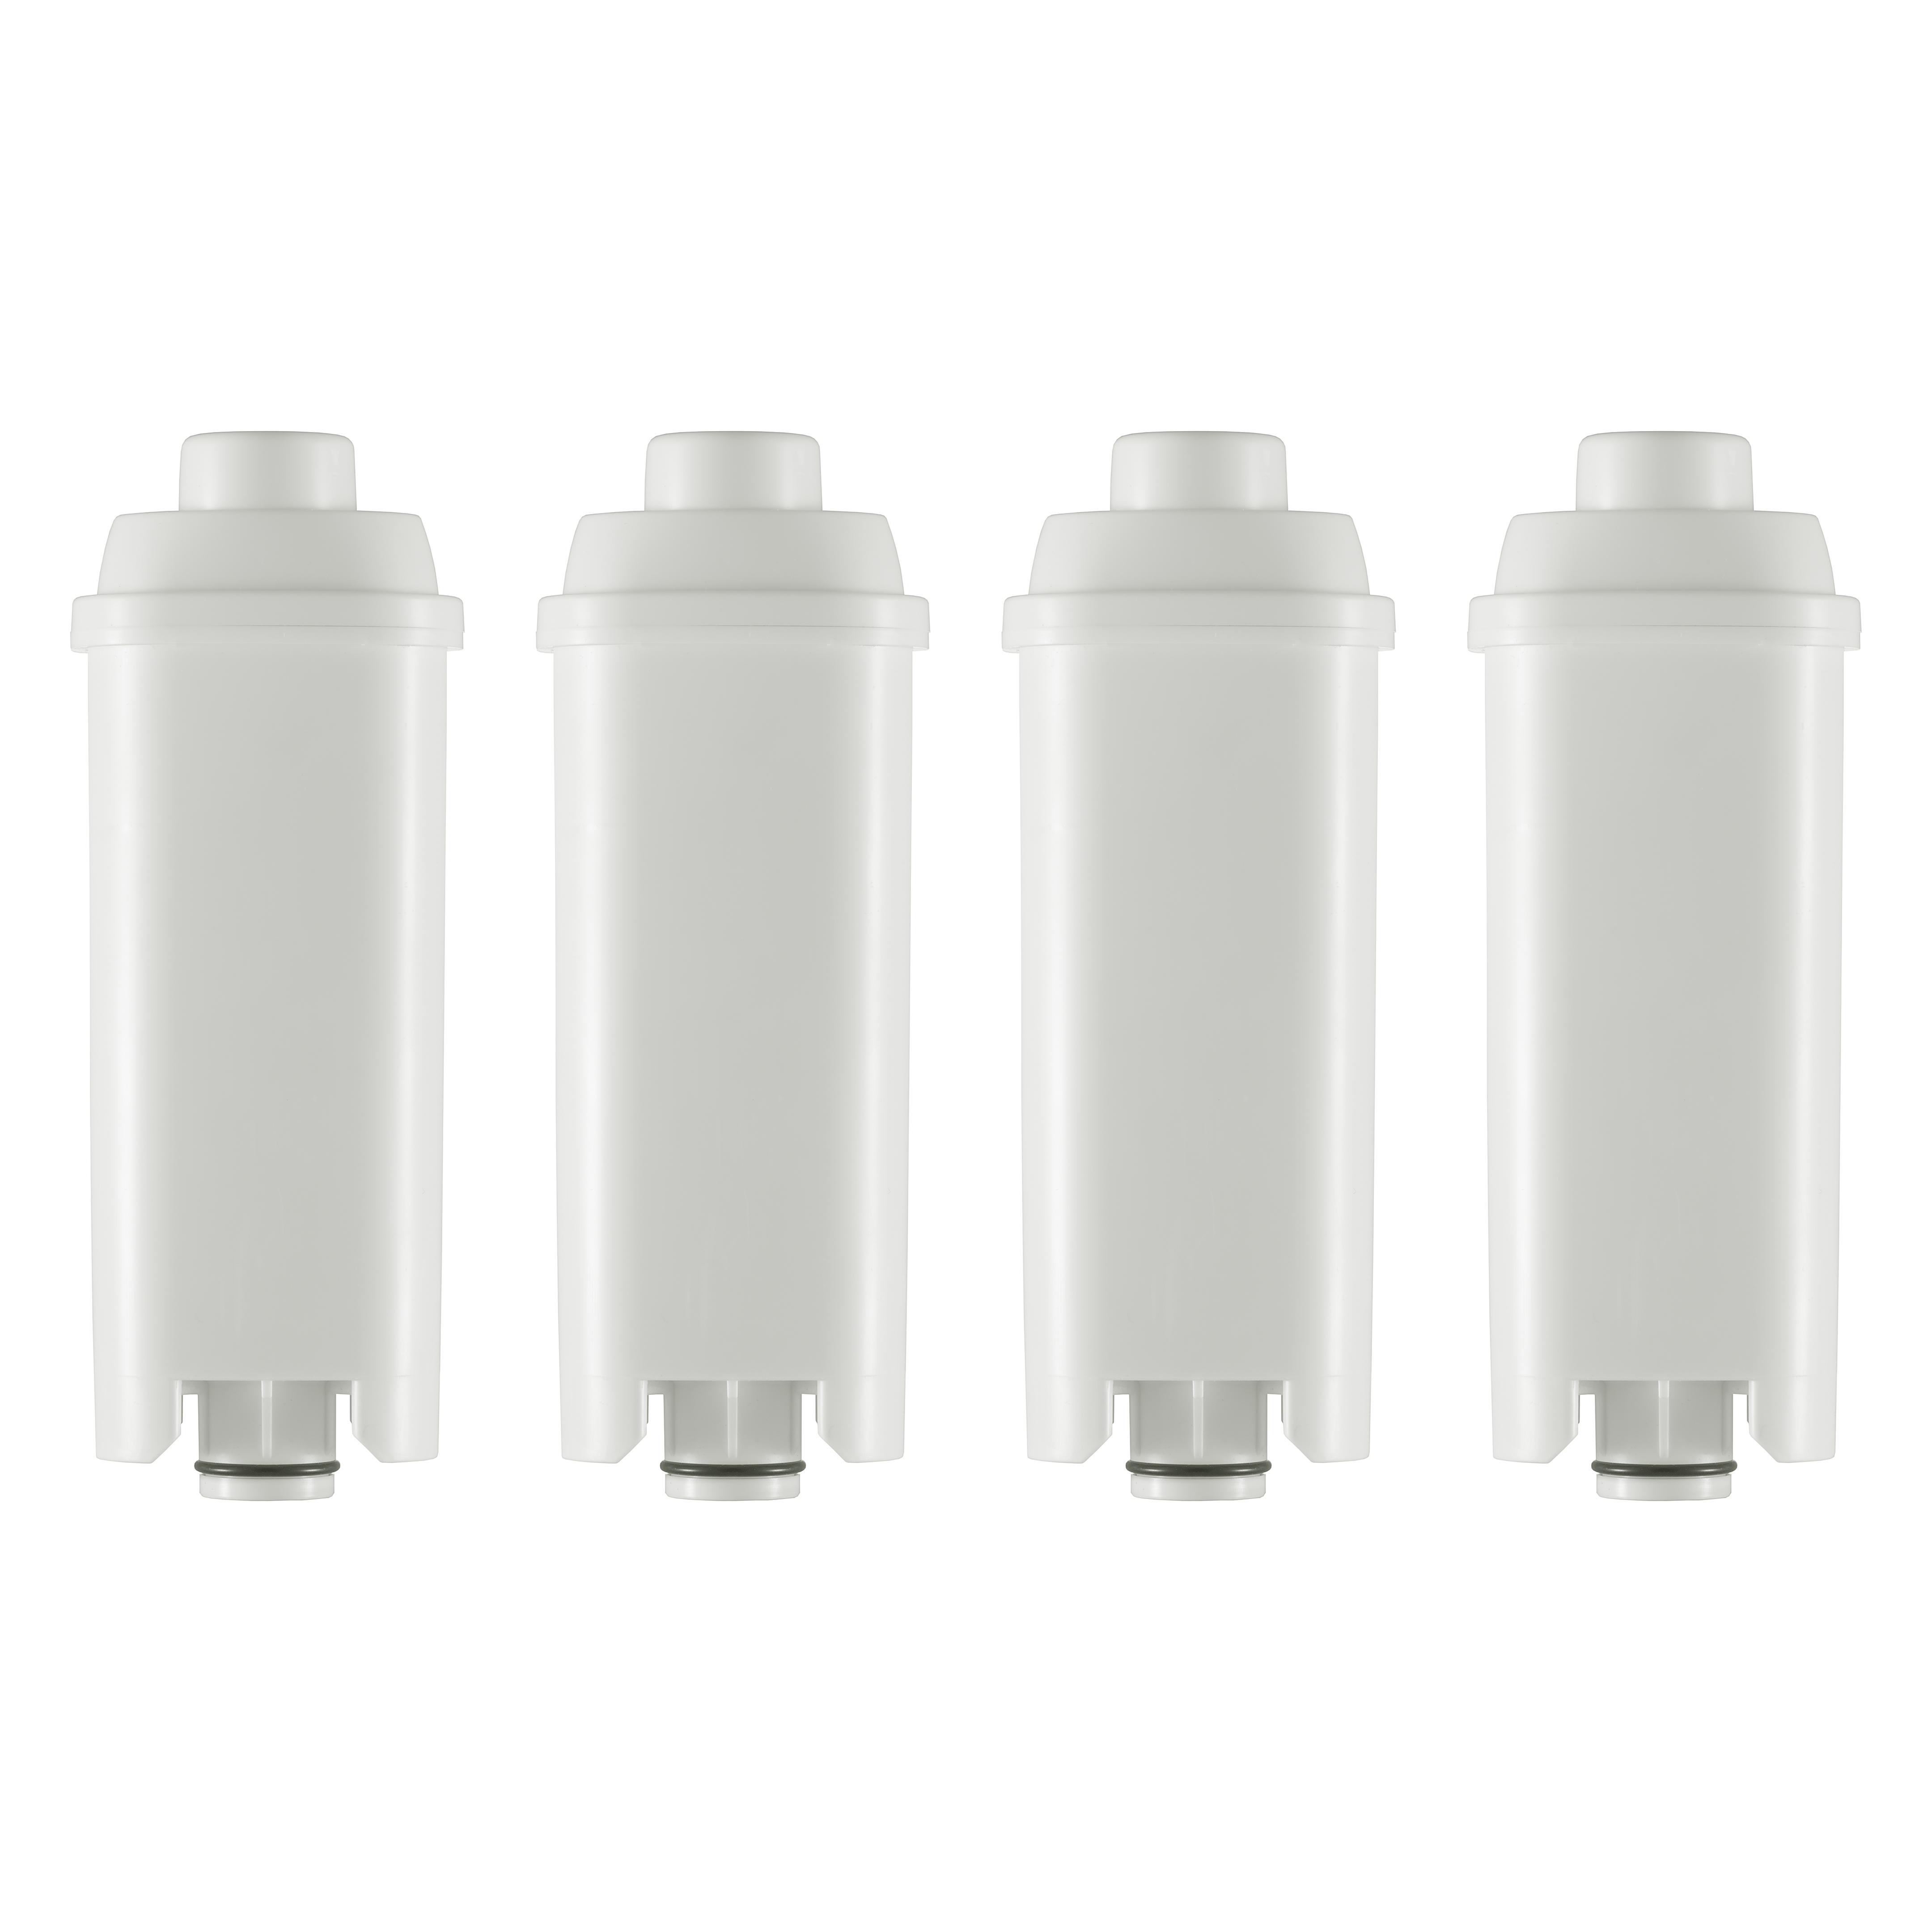 4 Stück Wasserfilter Kartuschen geeignet für DeLonghi Kaffeevollautomaten